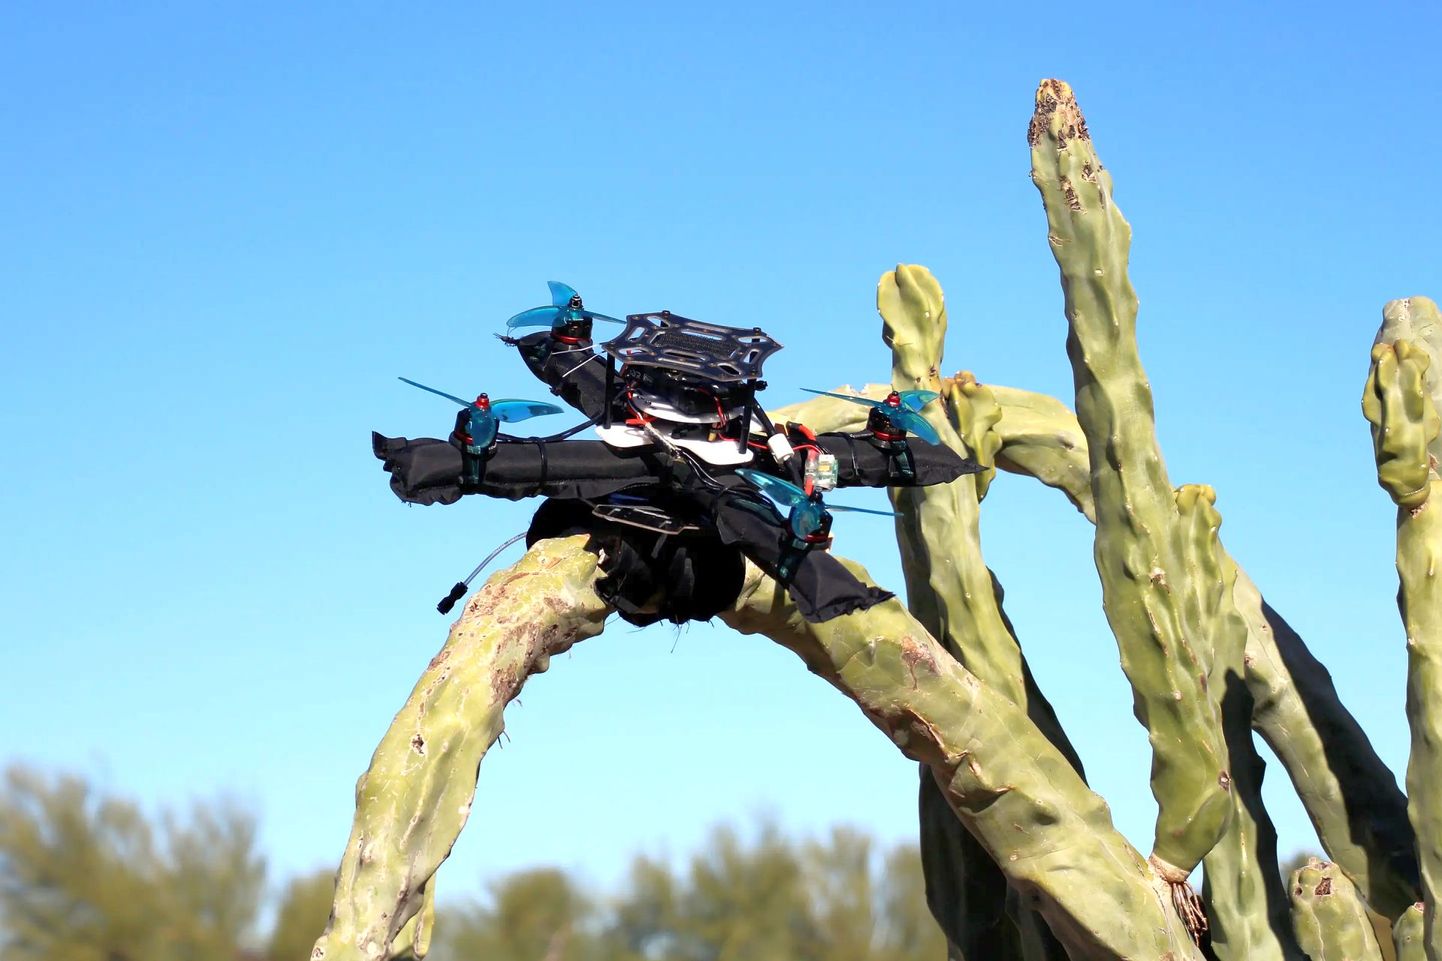 Kaktus ei suuda siiski täispuhutavat drooni katki torgata. Pehme lennuaparaat võib hoopis oksast haarata ja kaktusel peatuda.